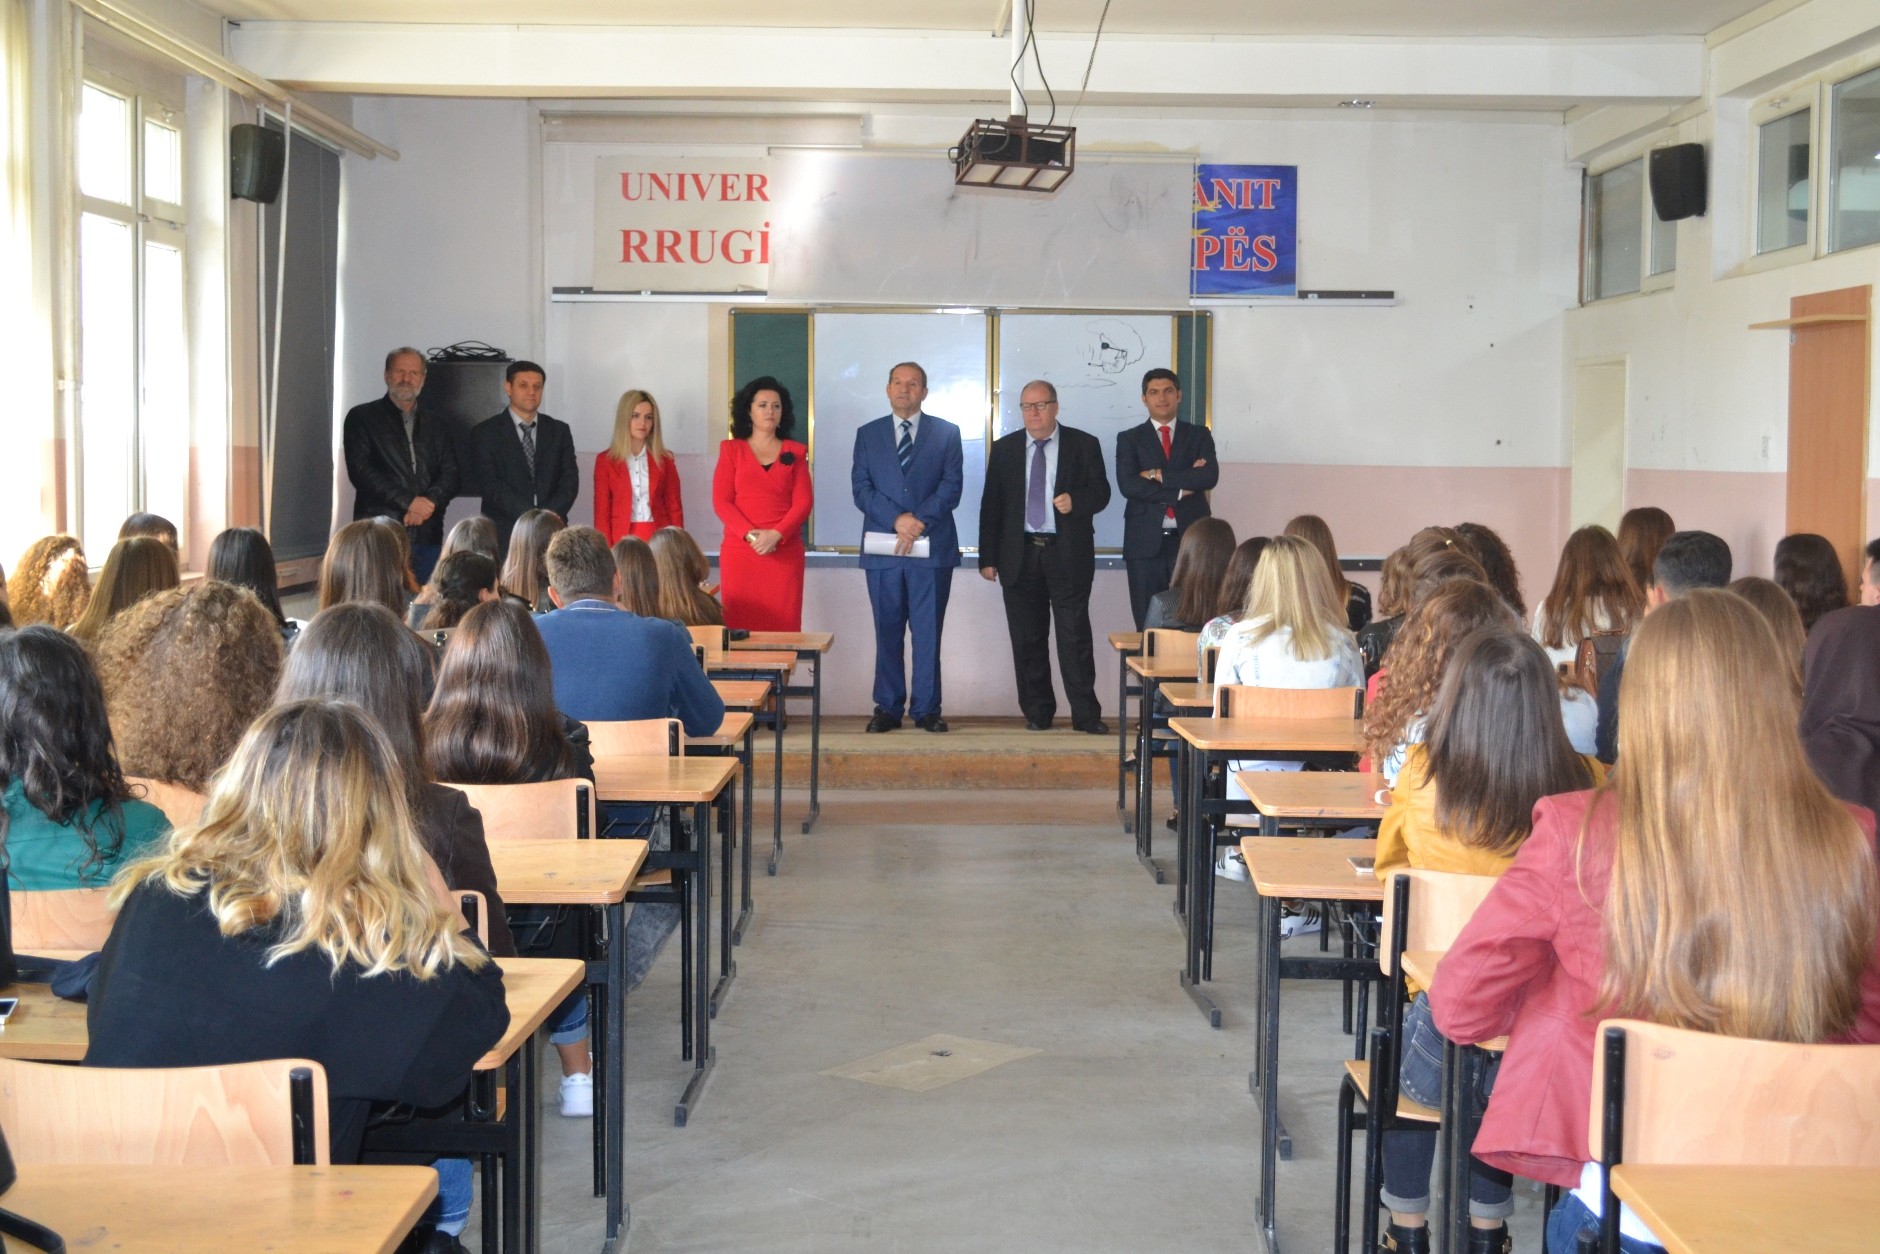 Universiteti i Gjilanit pret me ceremoni studentët e rinj